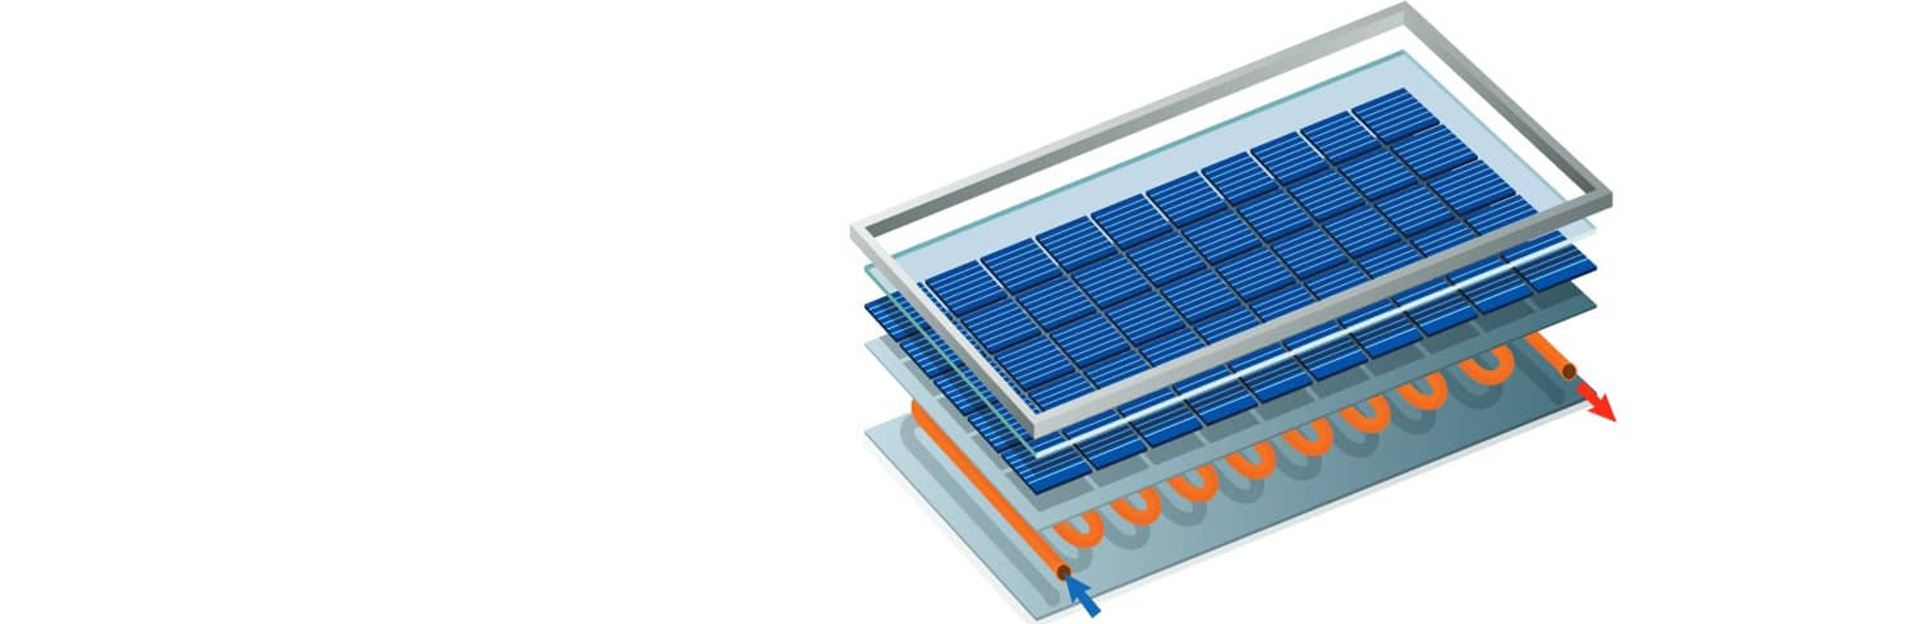 Les panneaux solaires hybrides, on vous dit tout ! 